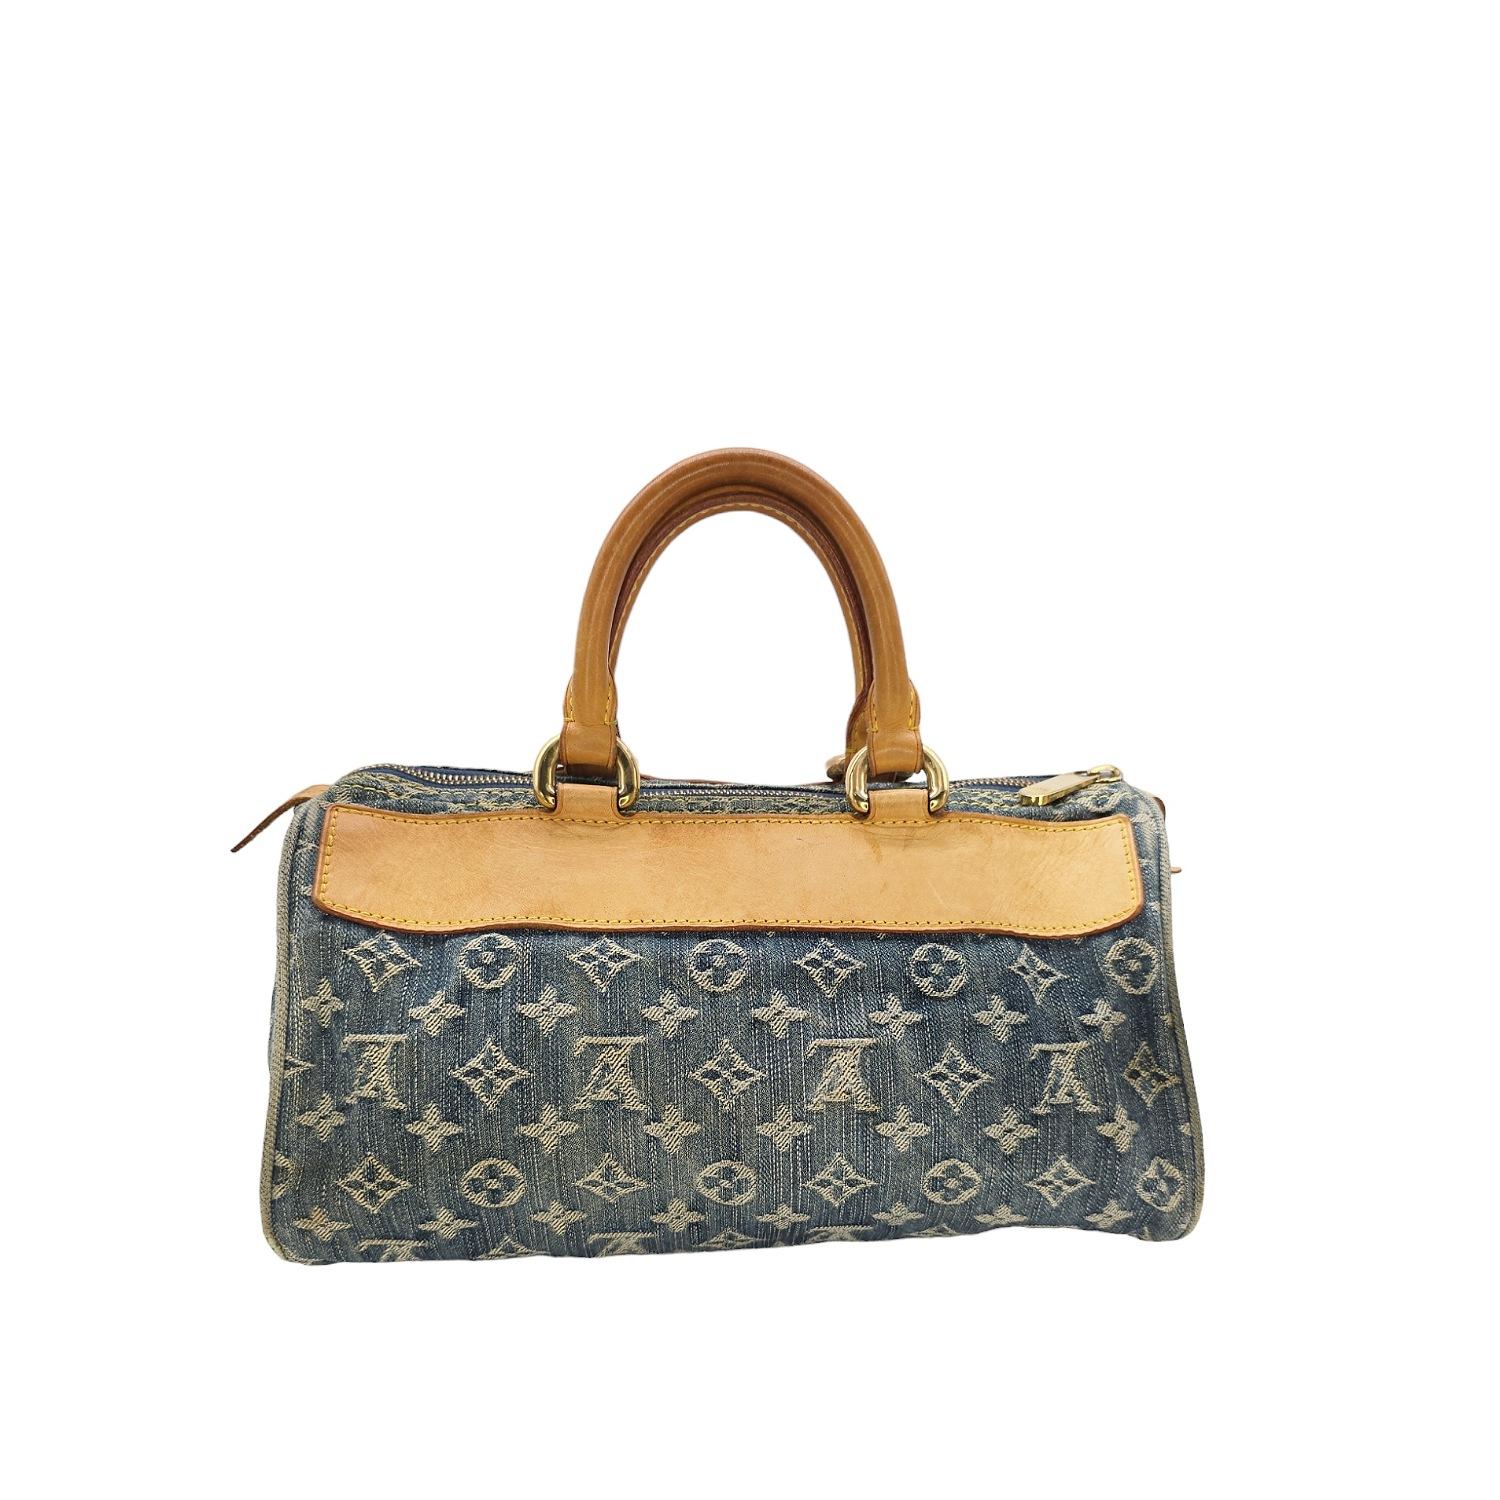 Louis Vuitton Monogram Denim Neo Speedy Handbag In Good Condition In Scottsdale, AZ